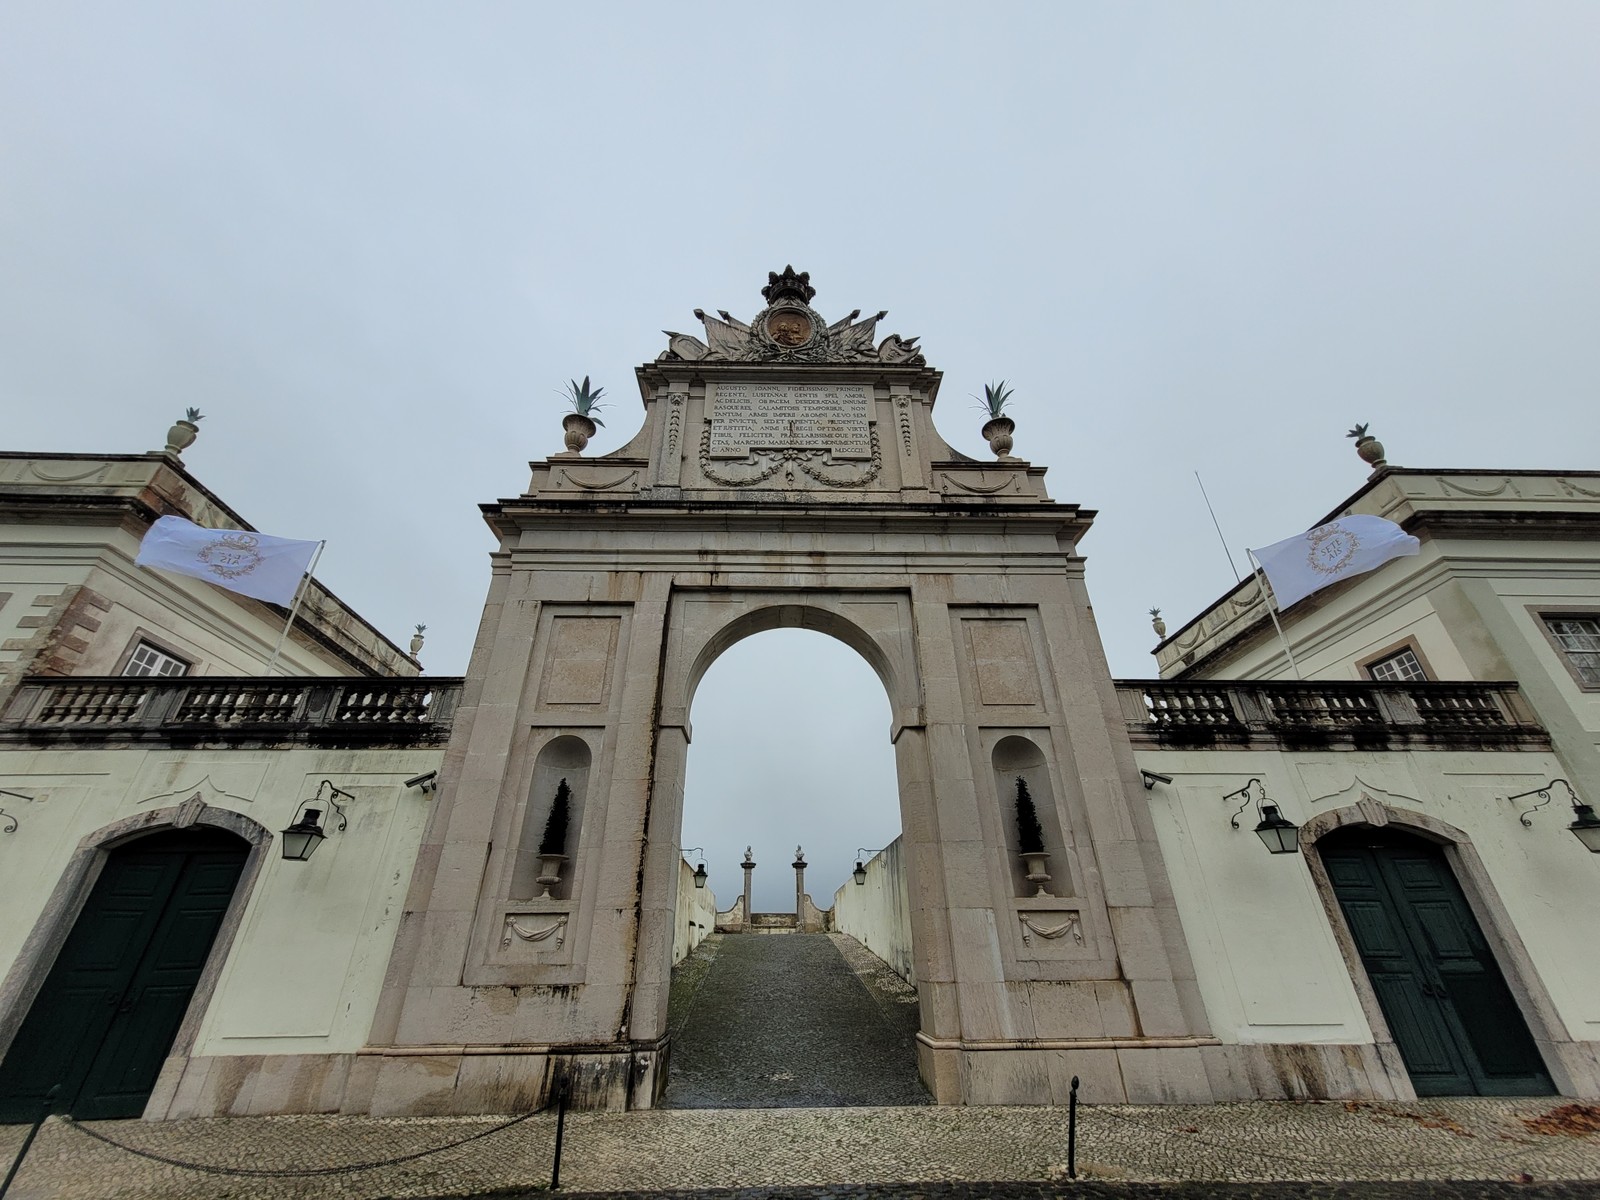 O 'arco do triunfo' erguido em 1802 em homenagem à visita de Dom João IV e Carlota Joaquina, então príncipes de Portugal, ao Palácio de Seteais, em Sintra — Foto: Eduardo Maia / O Globo